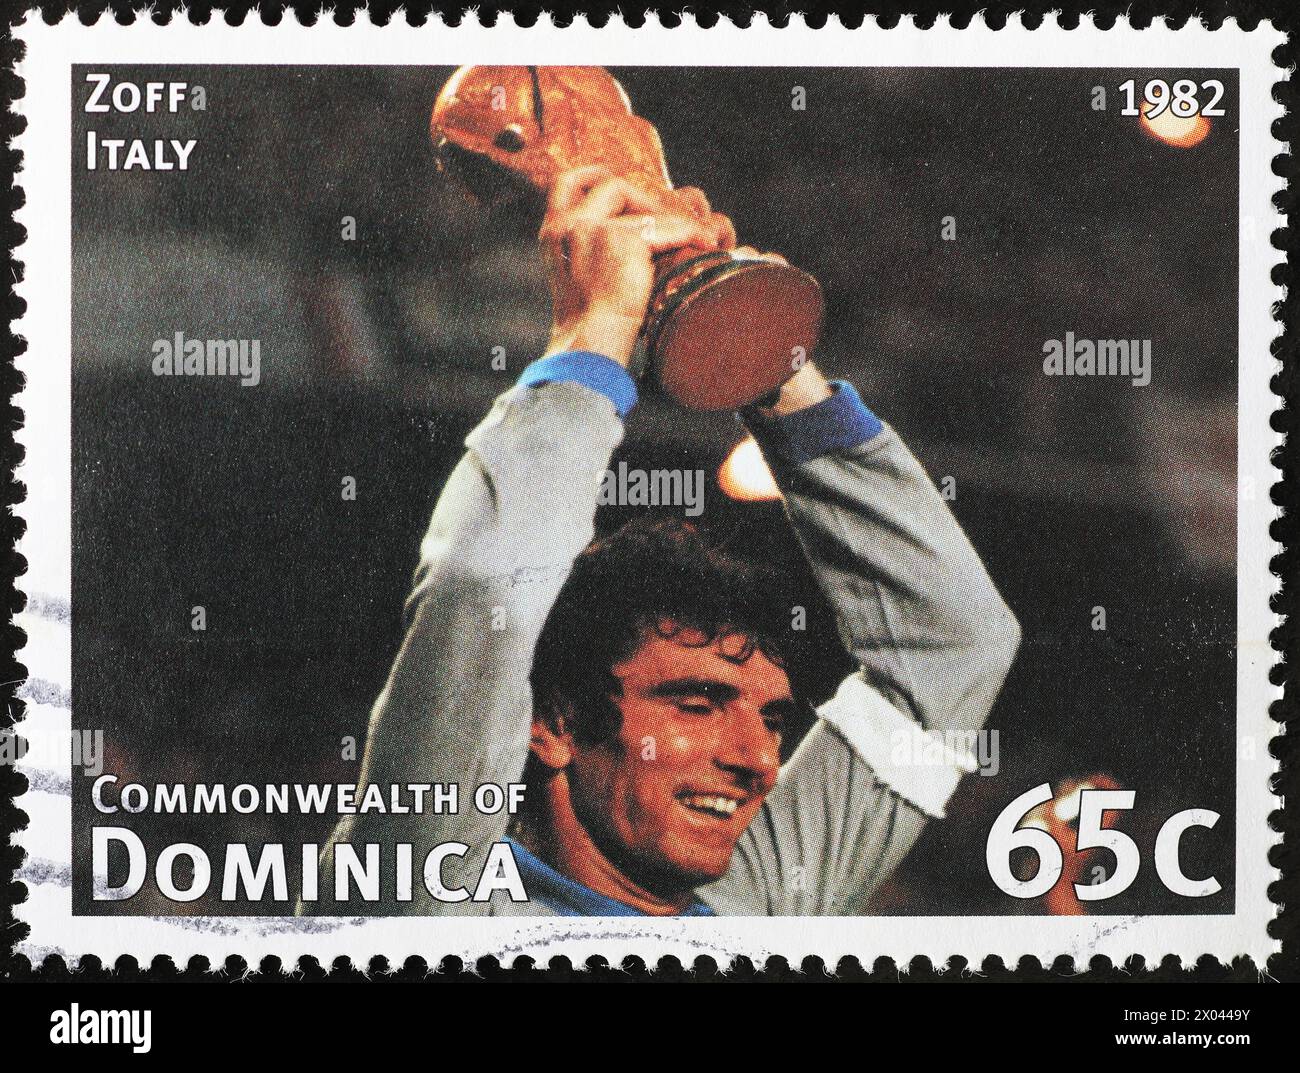 Dino Zoff mit der Weltmeisterschaft 1982 auf Briefmarke Stockfoto